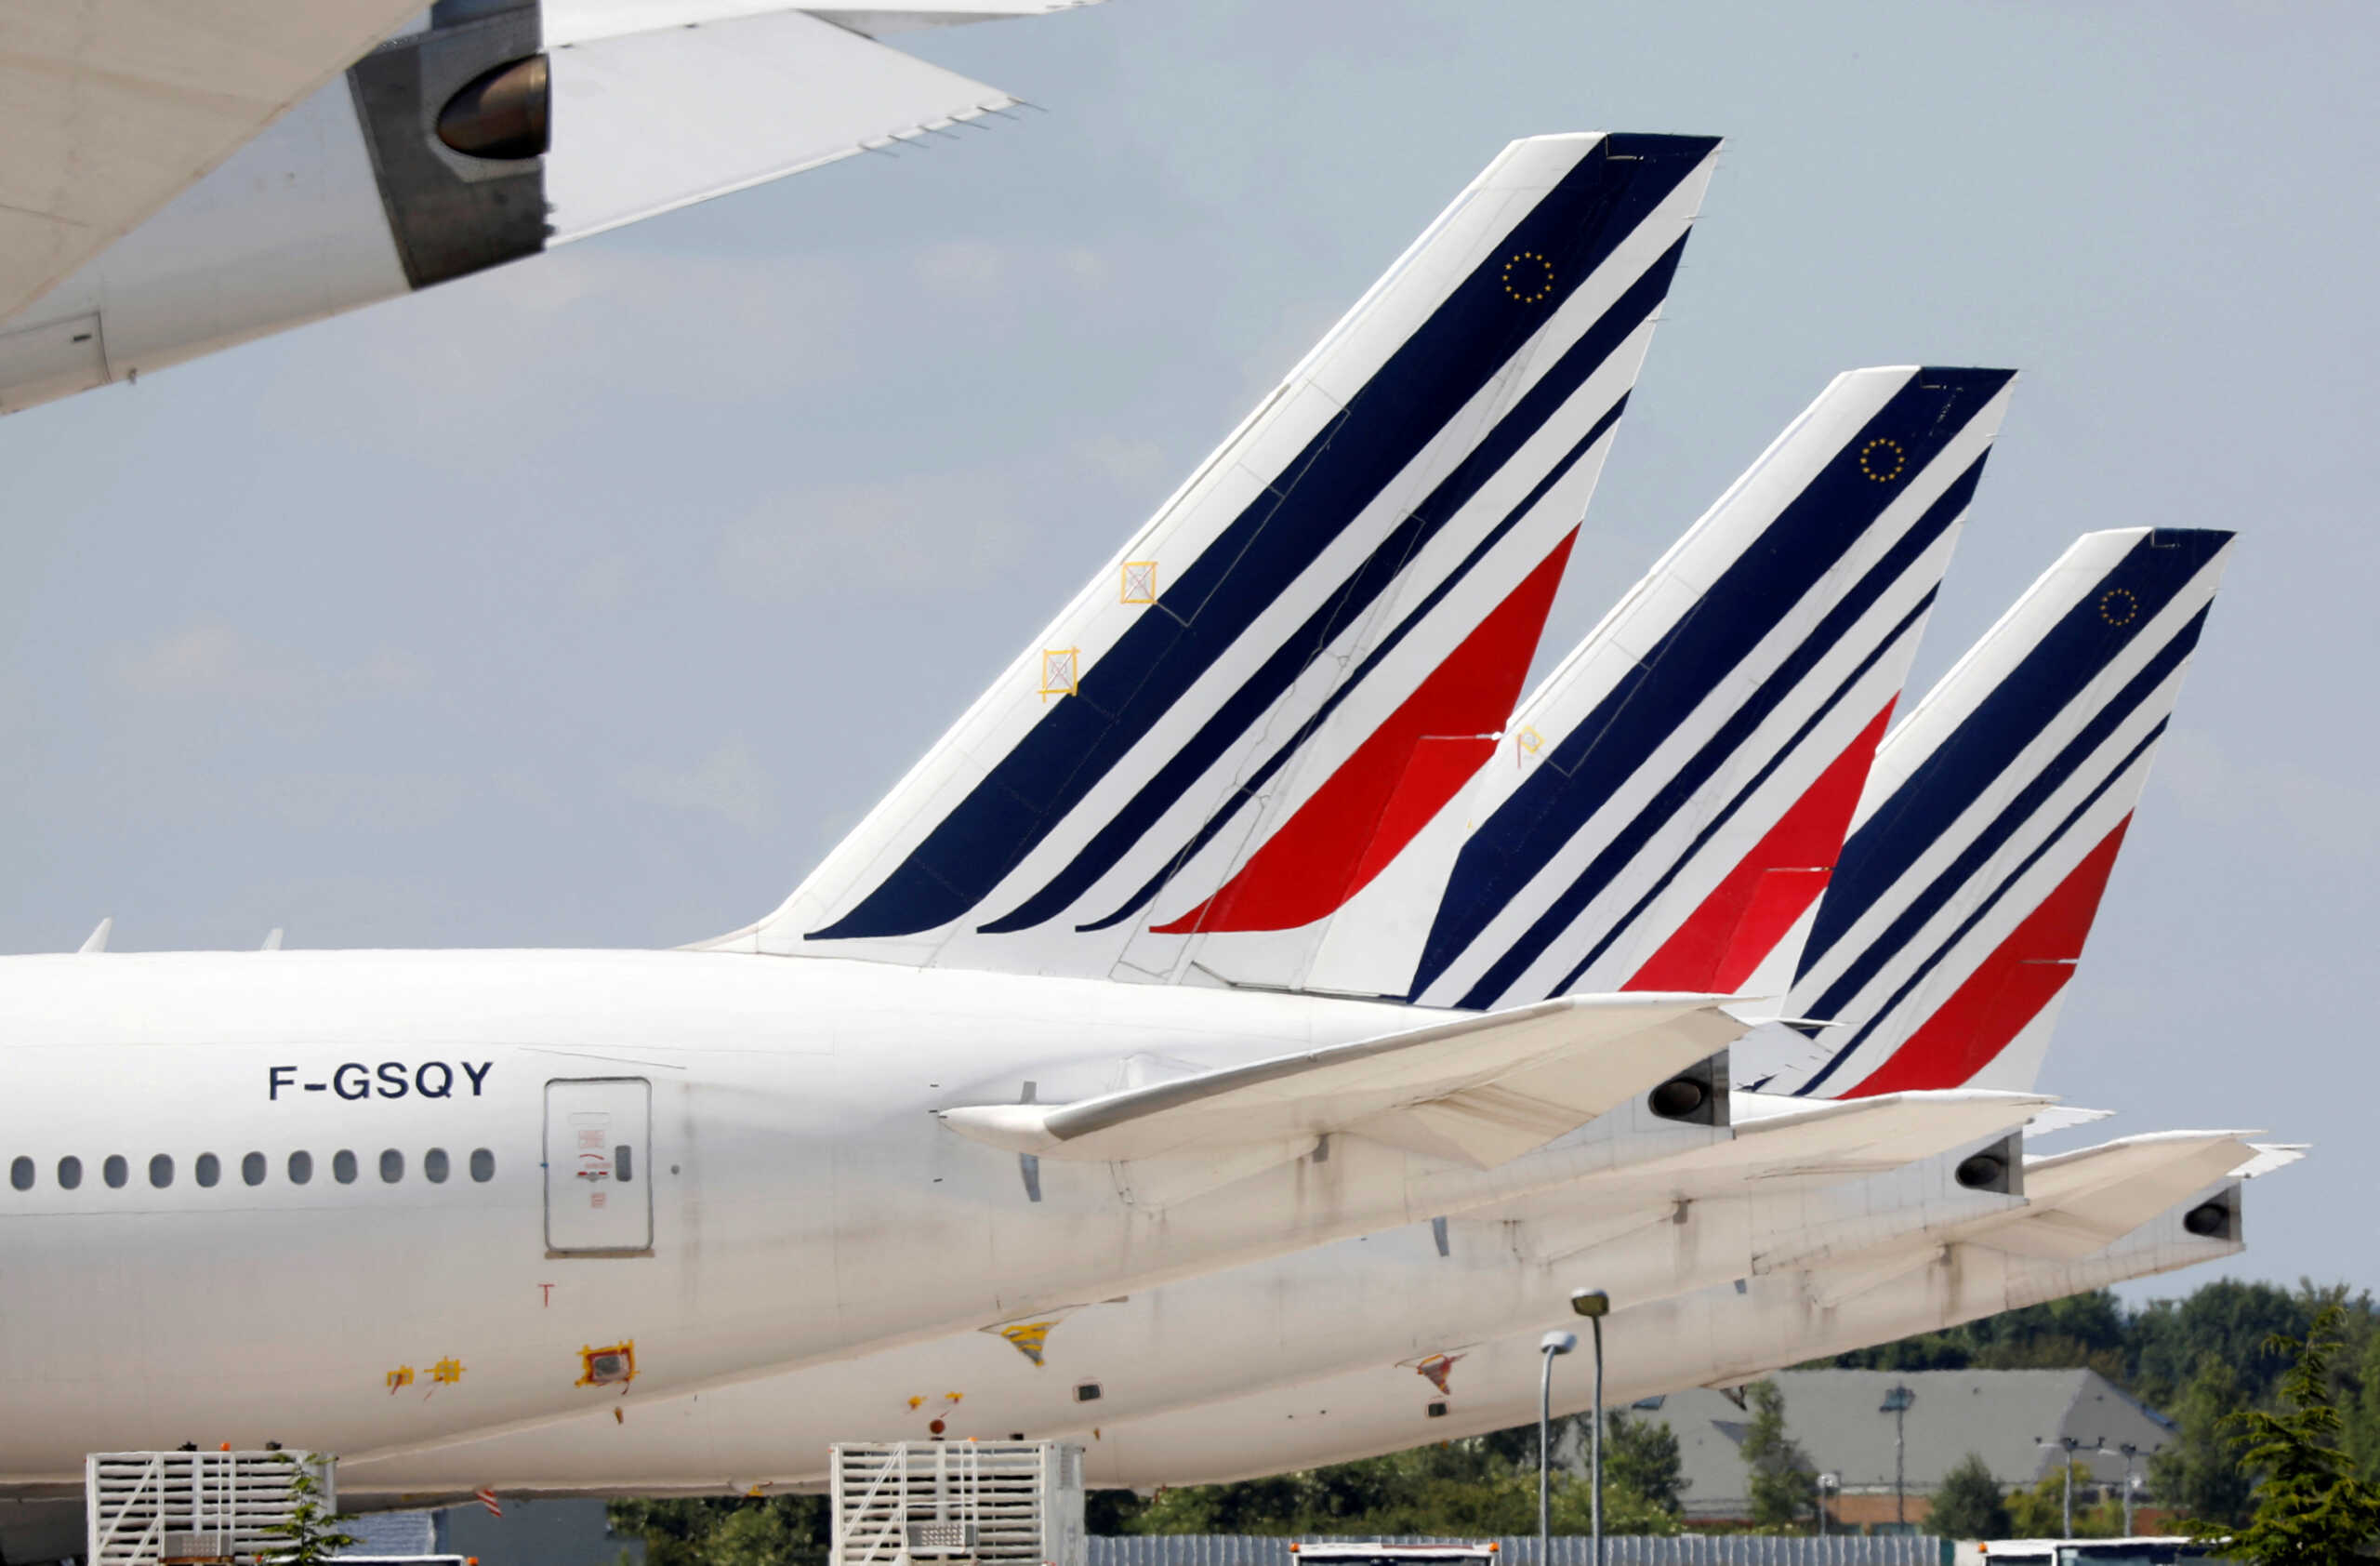 Γαλλία: Συναγερμός και εκκένωση των αεροδρομίων σε Ναντ, Μπορντώ, Μονπελιέ και Λιλ